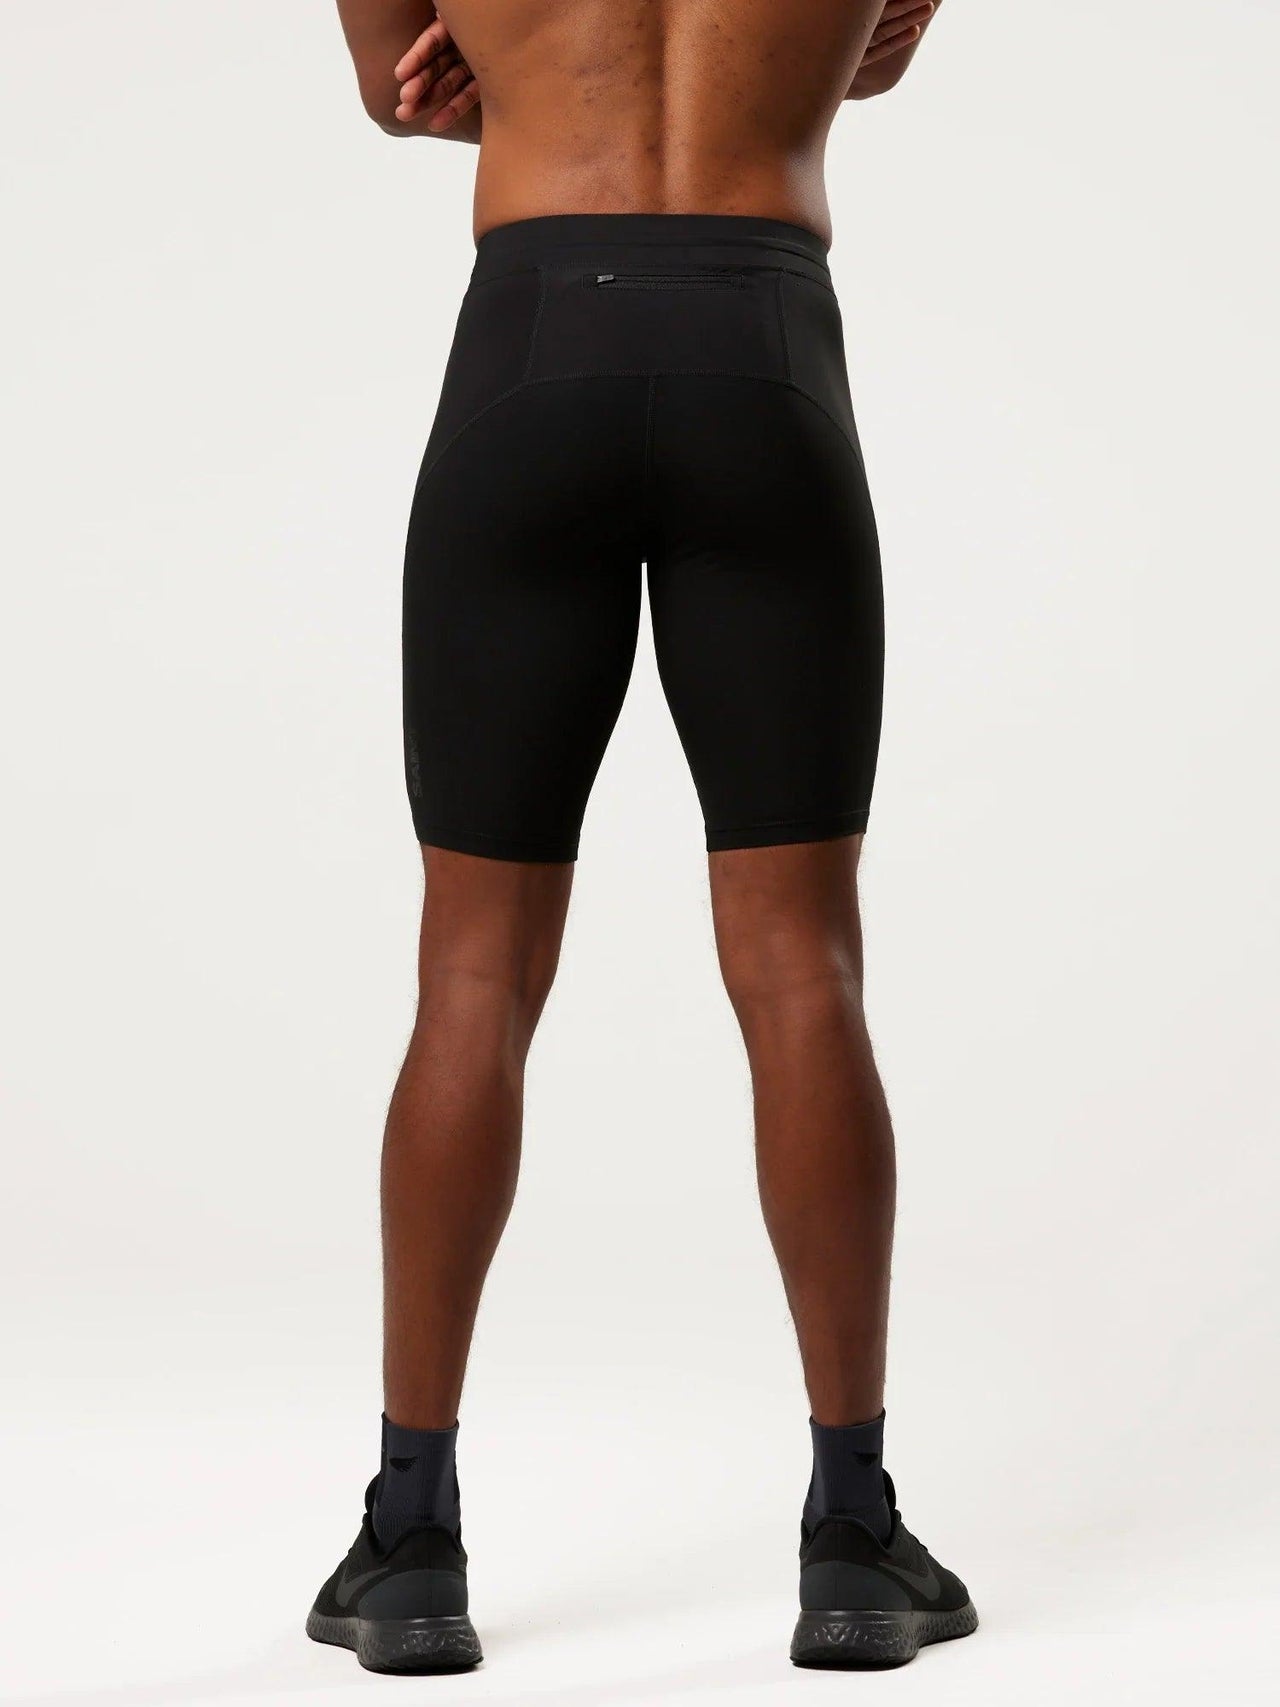 Men's Compression Shorts - Black | SA1NT LAYERS